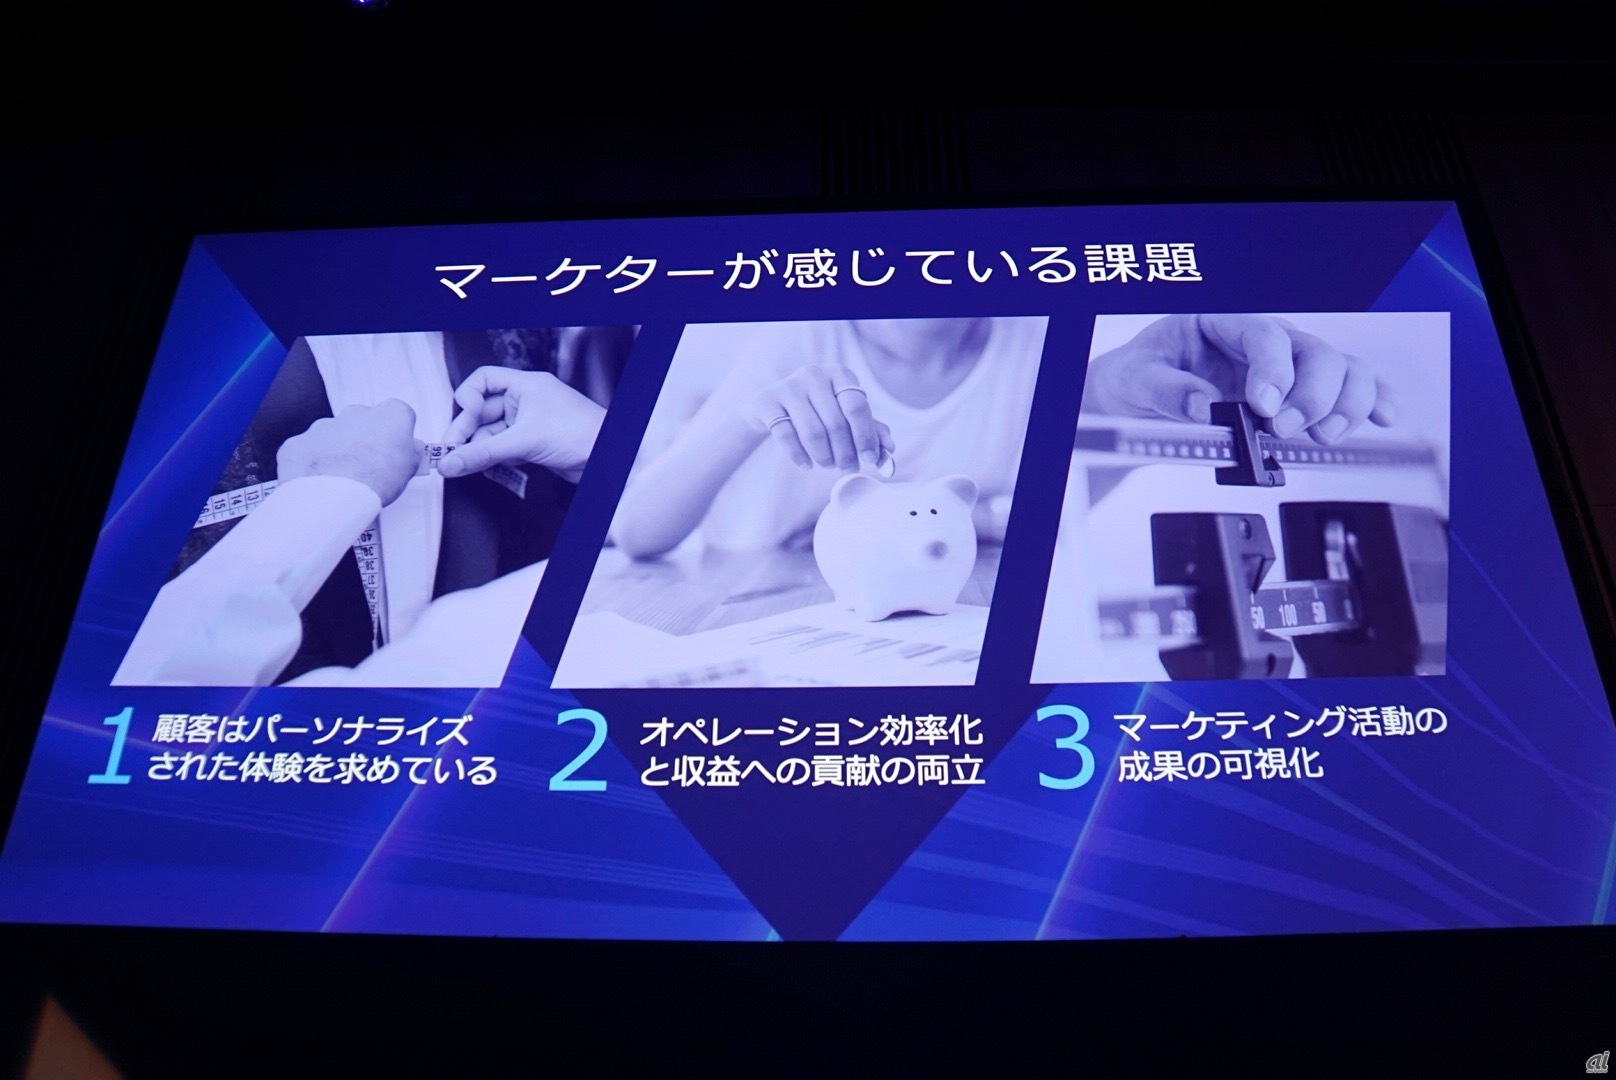 マーケターの 3つの課題 を解決するマルケトの提案 注力するai製品群も Cnet Japan